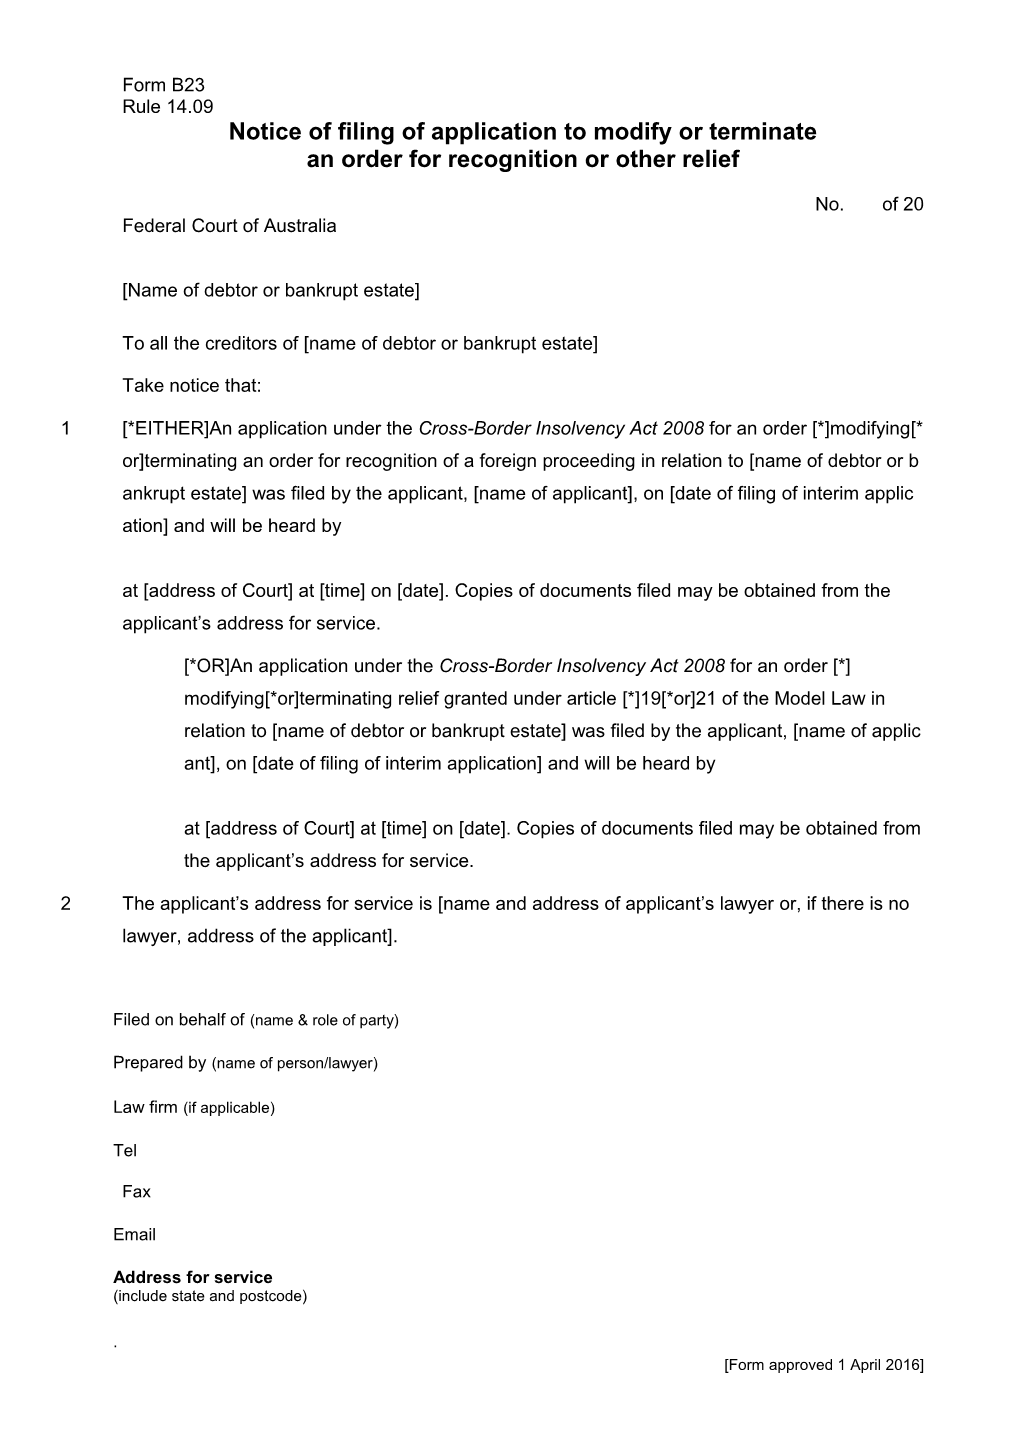 FCA Bankruptcy Form B23